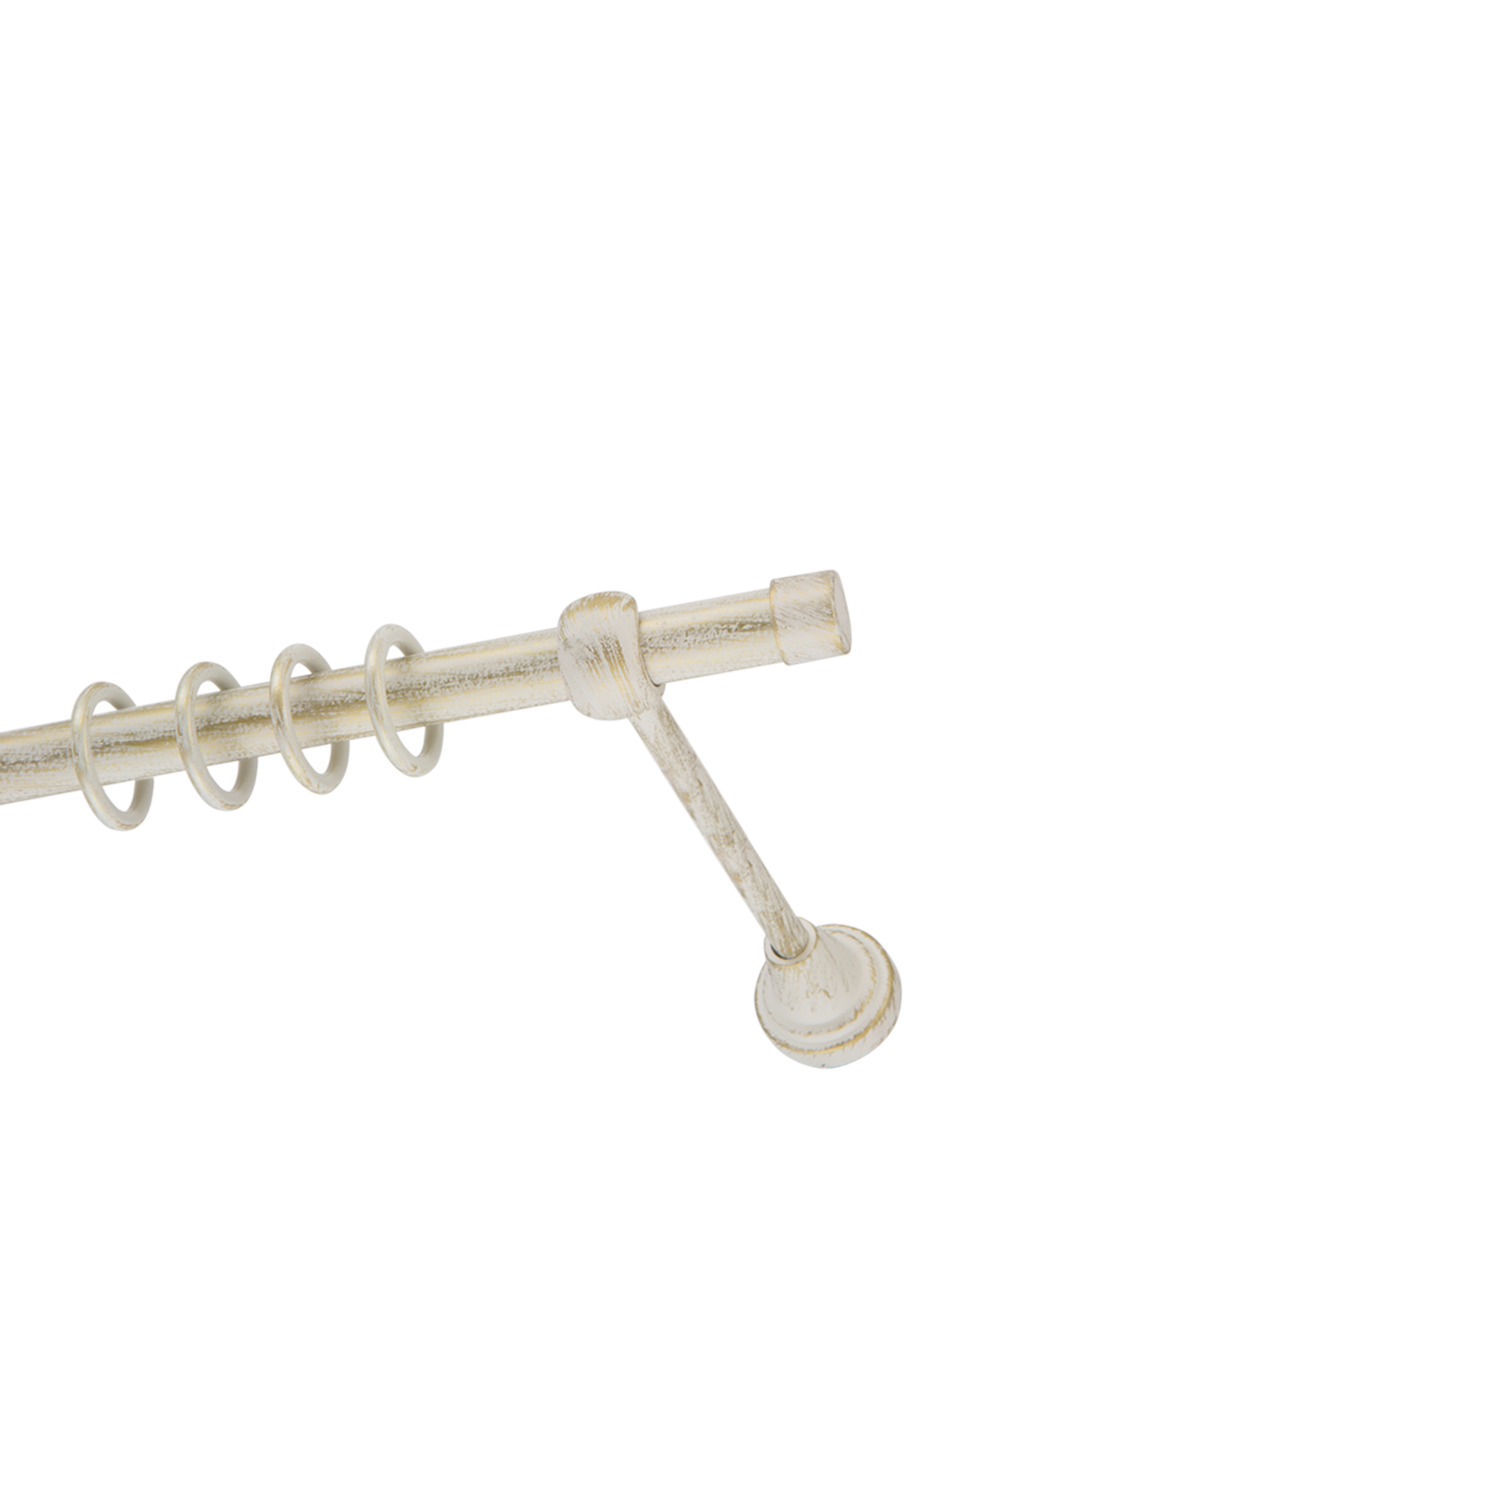 Металлический карниз для штор Заглушка, однорядный 16 мм, белый, гладкая штанга, длина 180 см - фото Wikidecor.ru